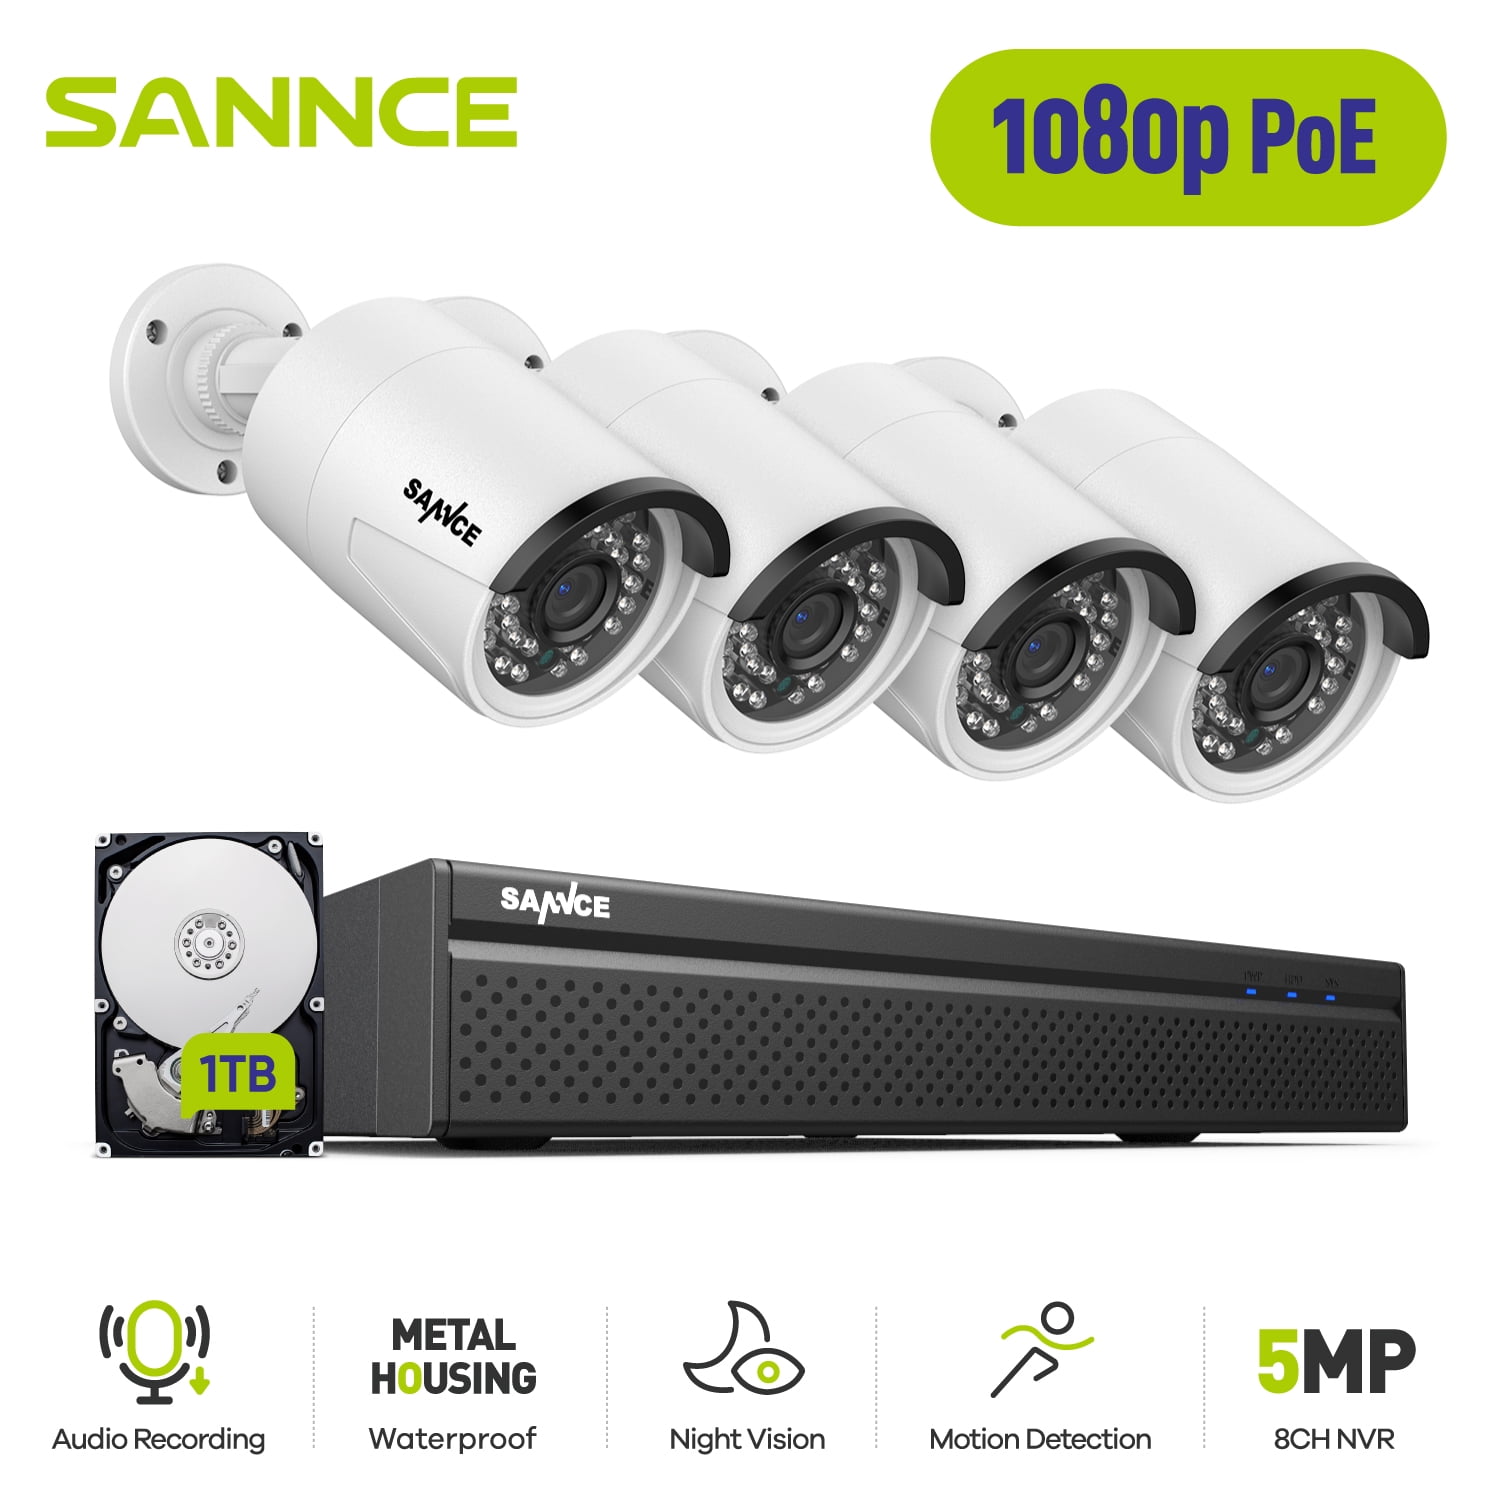 Sannce 5mp POE IP telecamera di sorveglianza NVR 8ch monitoraggio audio ip66 accesso remoto 